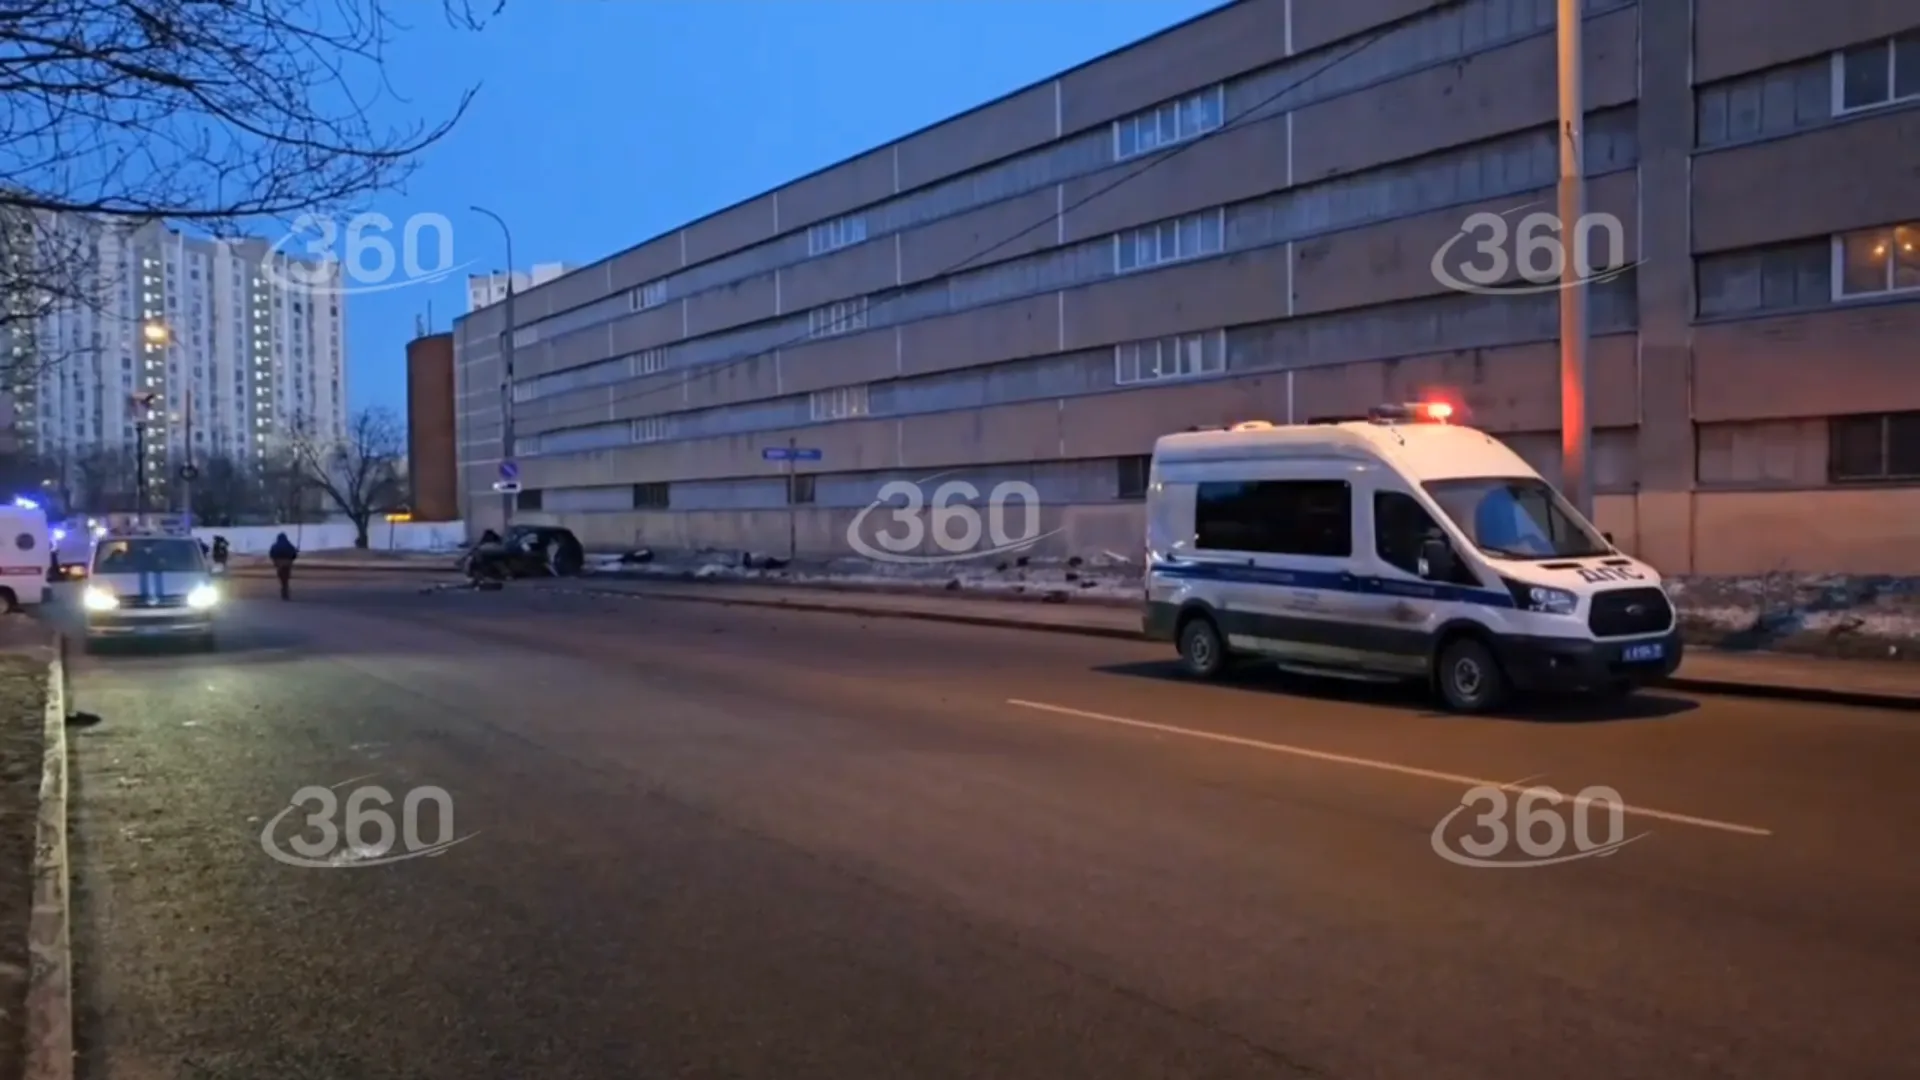 Авто в Москве врезалось в столб. Последствия смертельной аварии сняли на видео